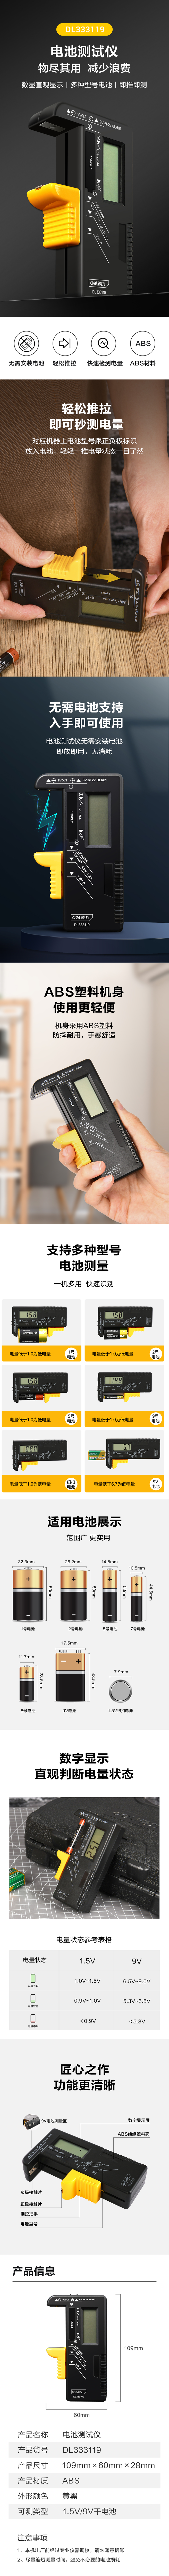 得力工具 DL333119 电池检测仪数显式(黄)-1.5V/9V